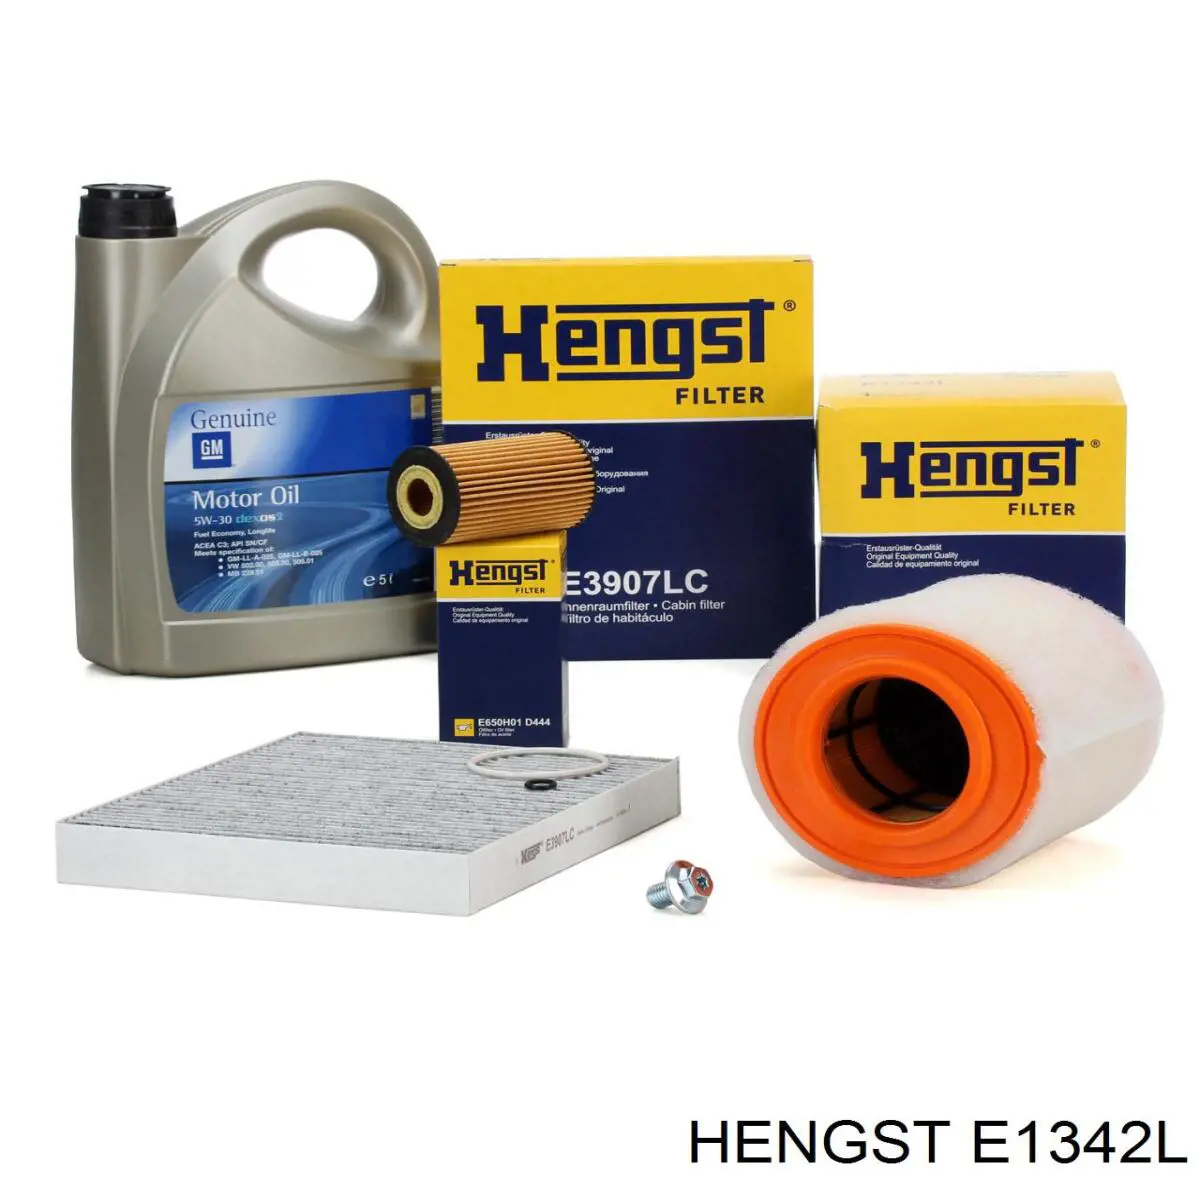 E1342L Hengst filtro de aire